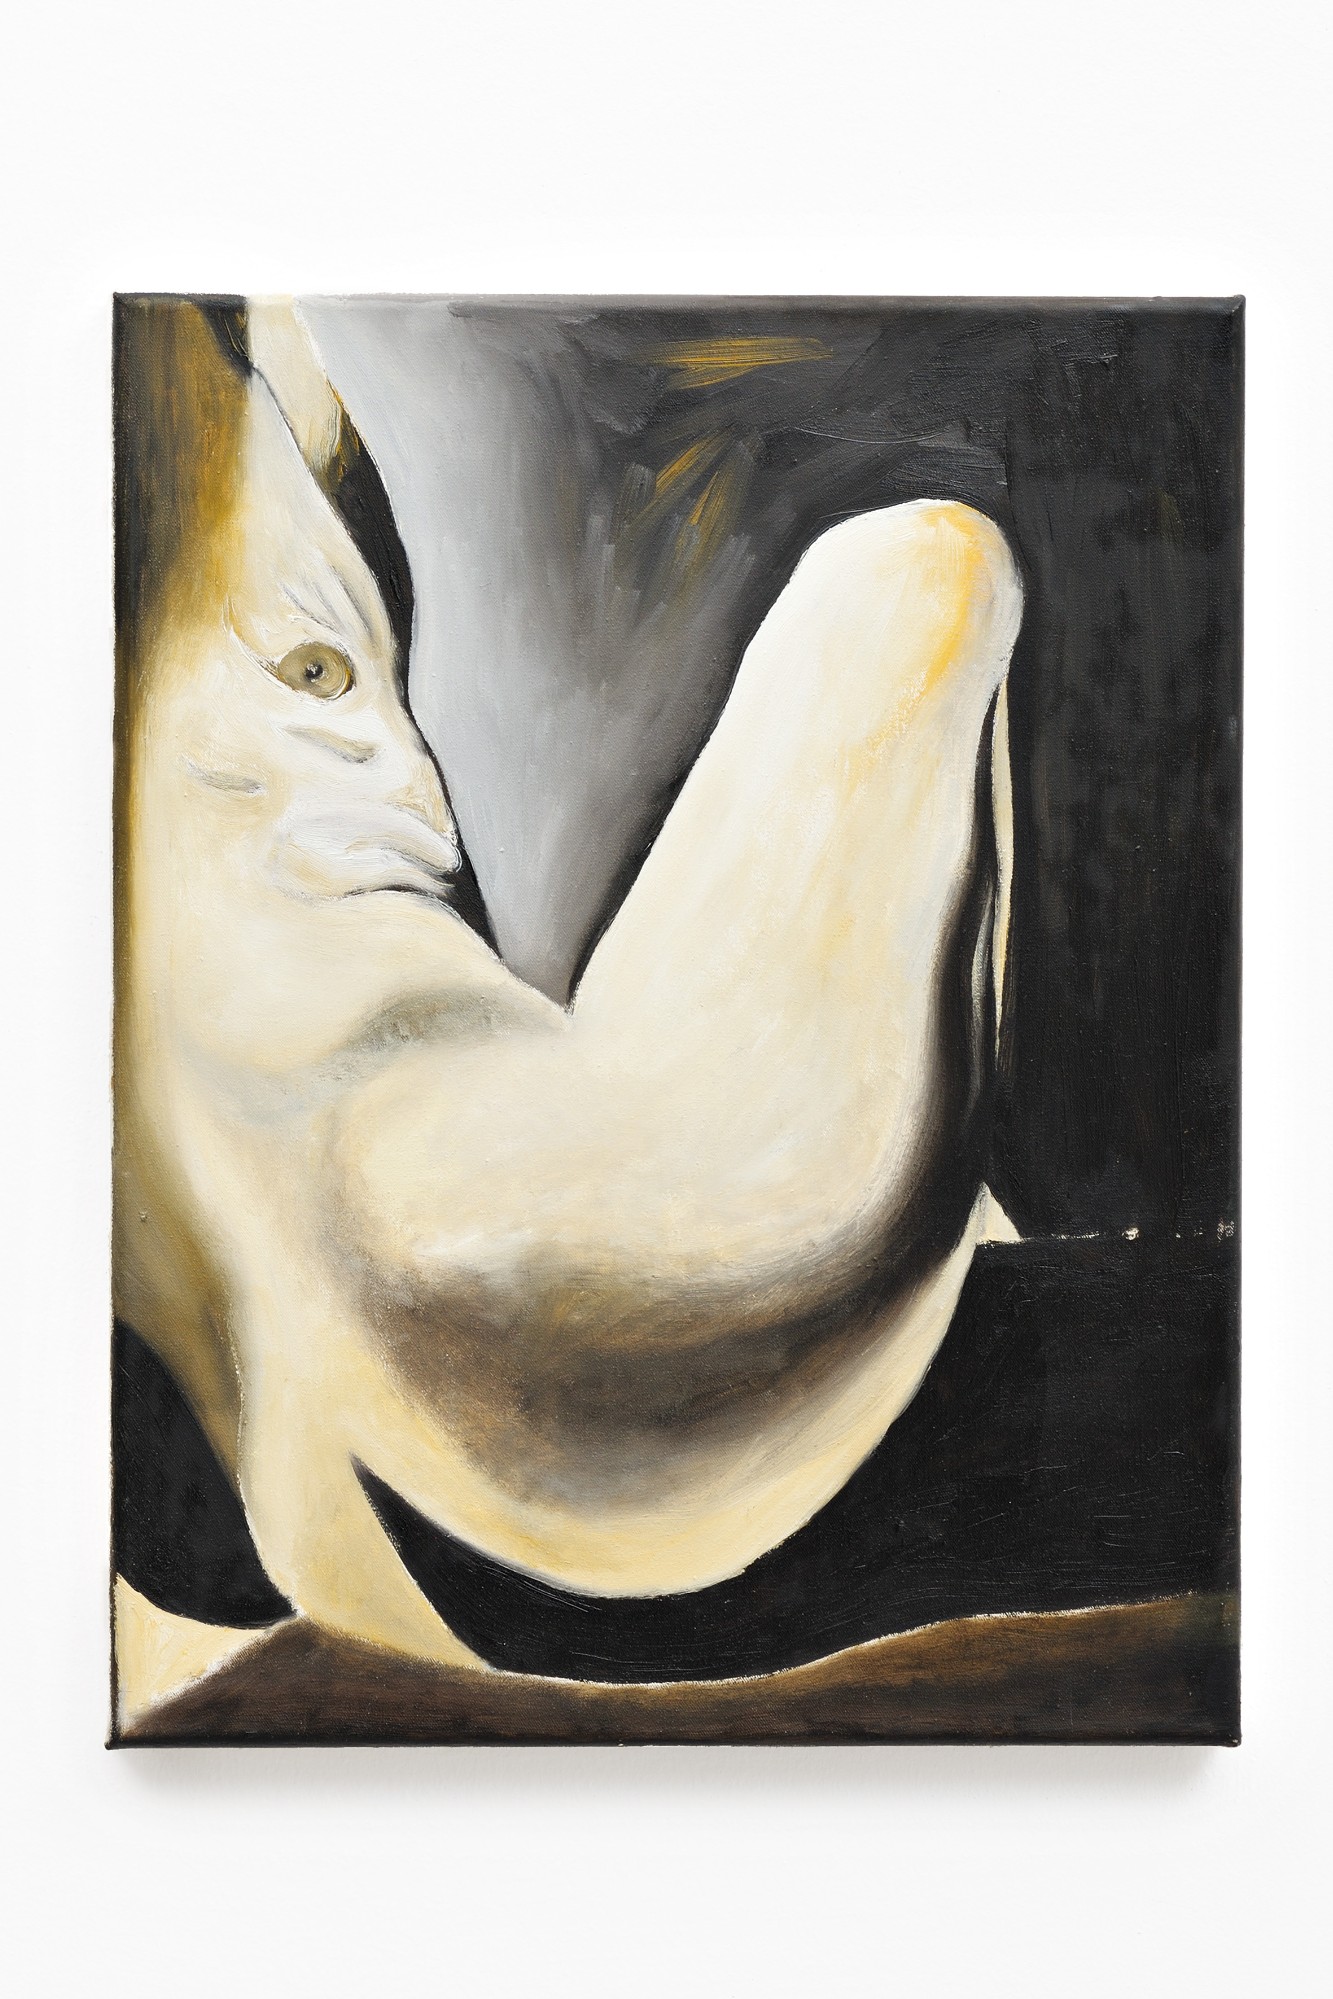 René Luckhardt, Untitled Nude, 2015, oil on canvas, 45 x 35 cm